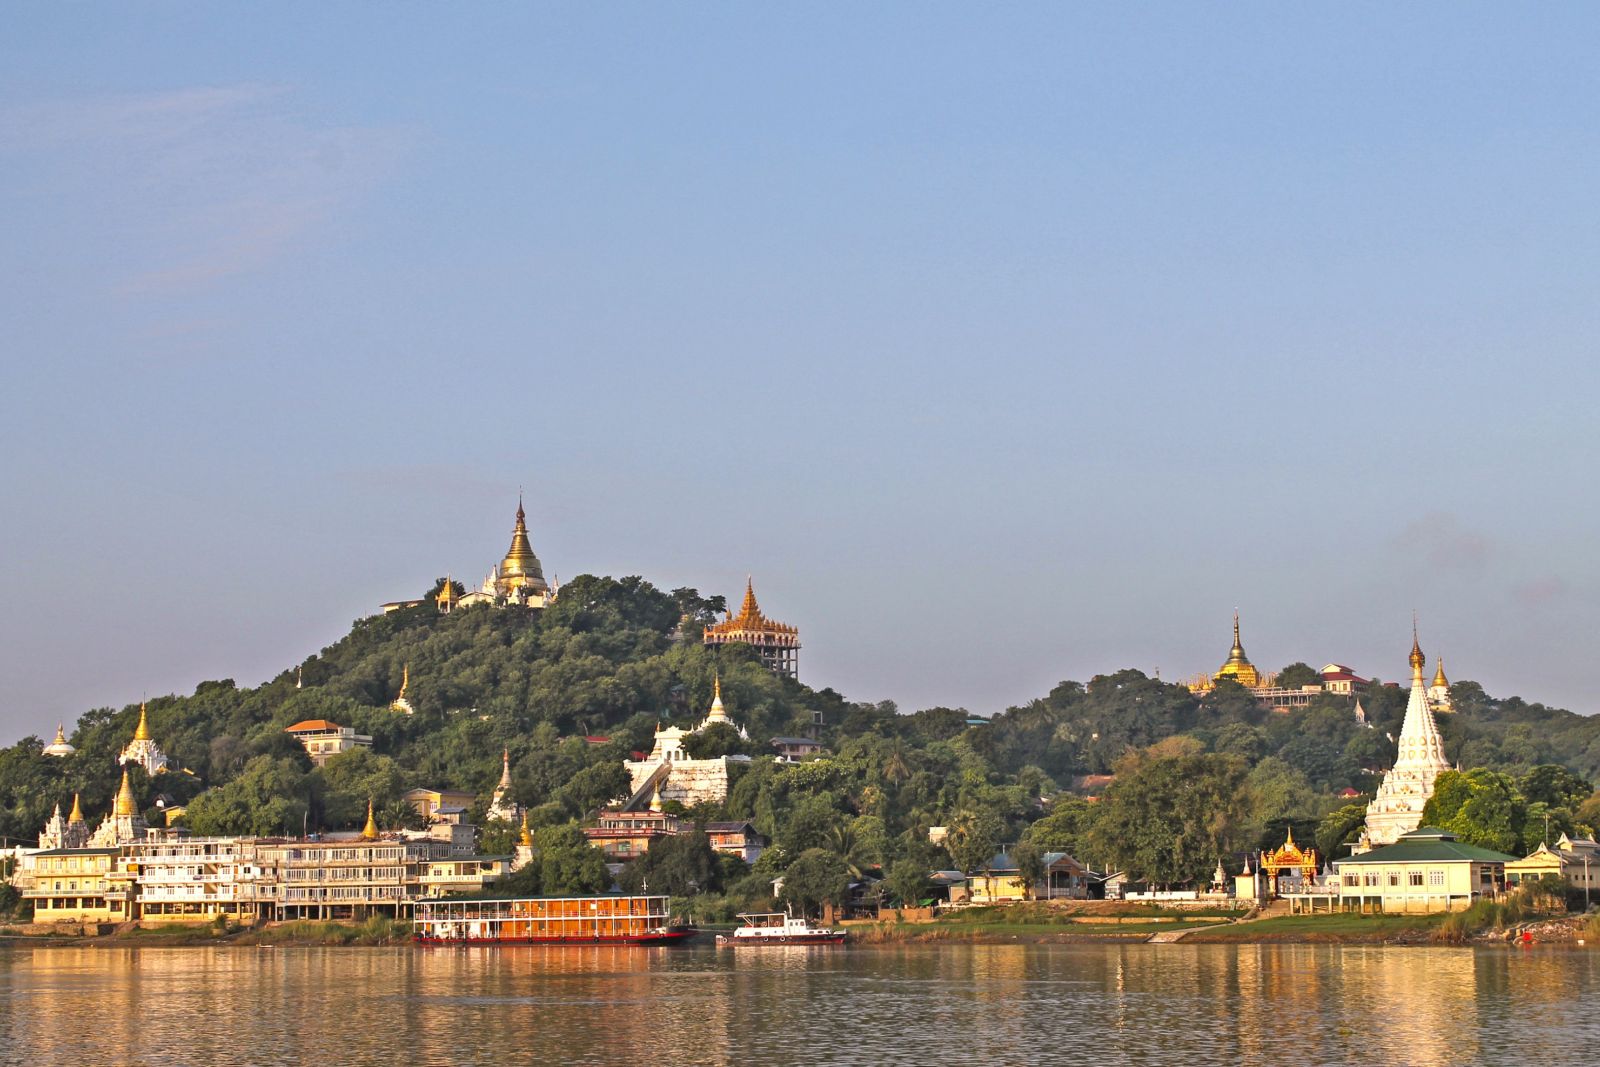 Blick auf das Ufer des mächtigen Irrawaddy